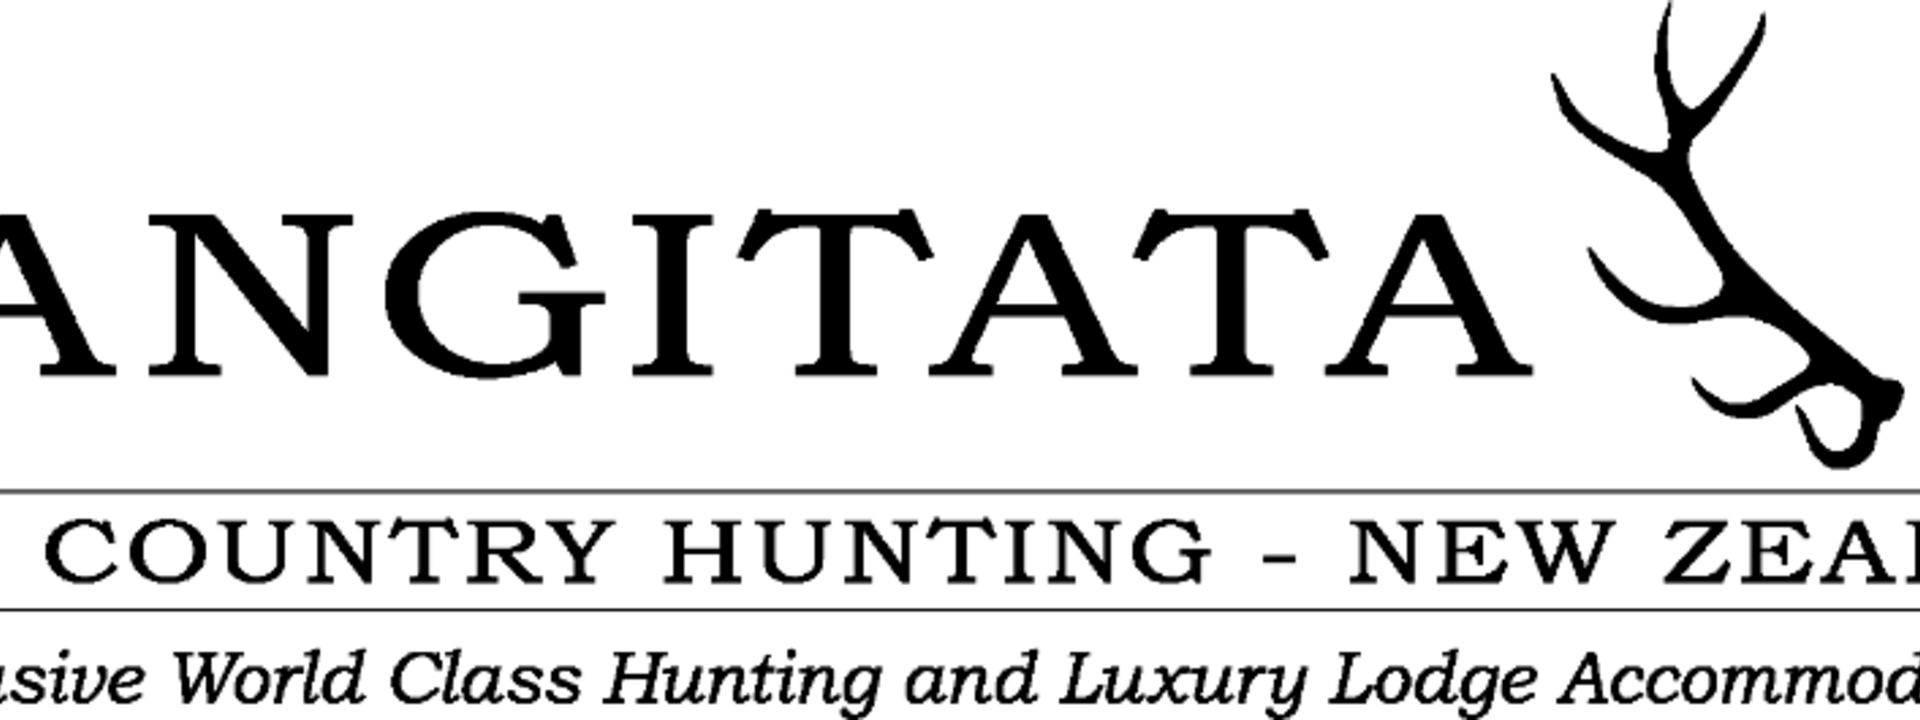 Rangitata logo resize B (2).png